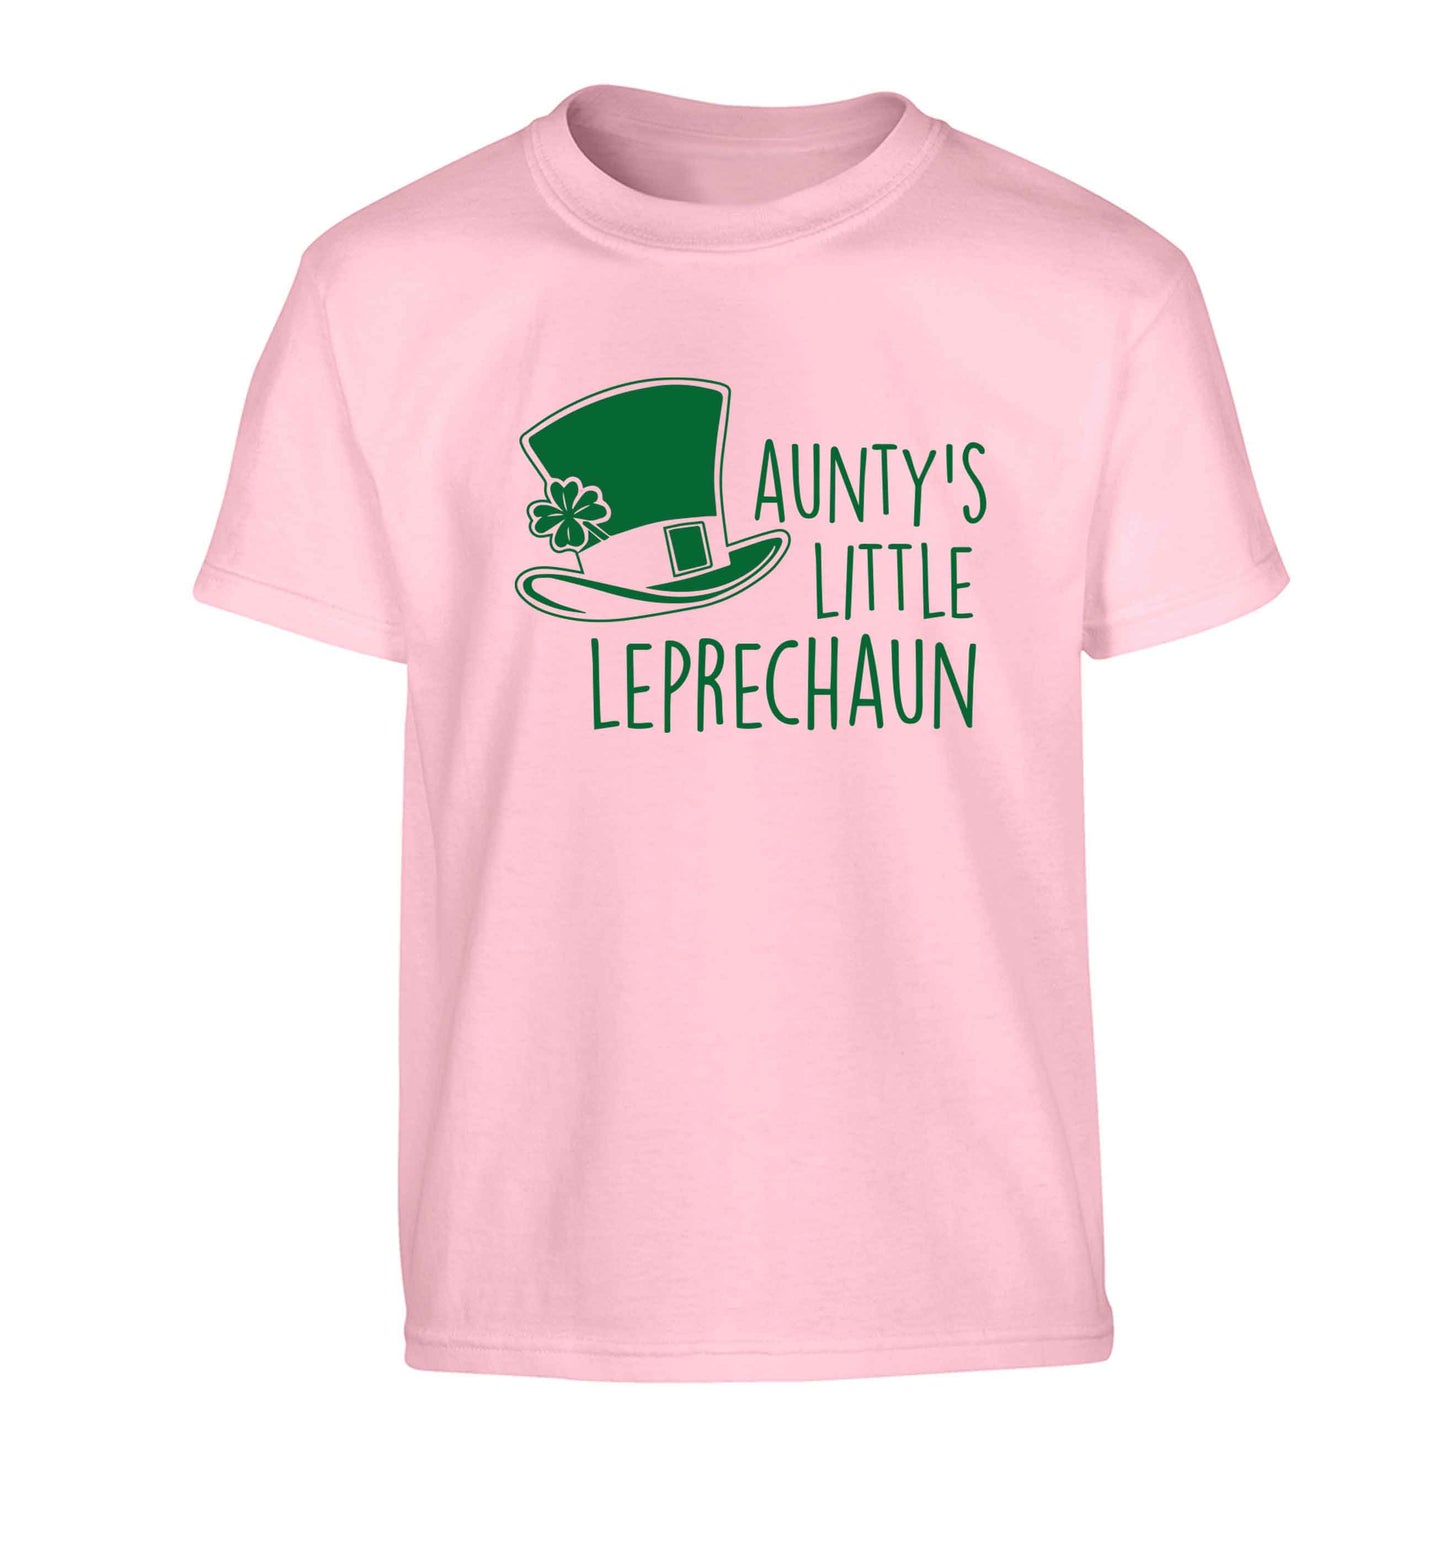 Aunty's little leprechaun Children's light pink Tshirt 12-13 Years